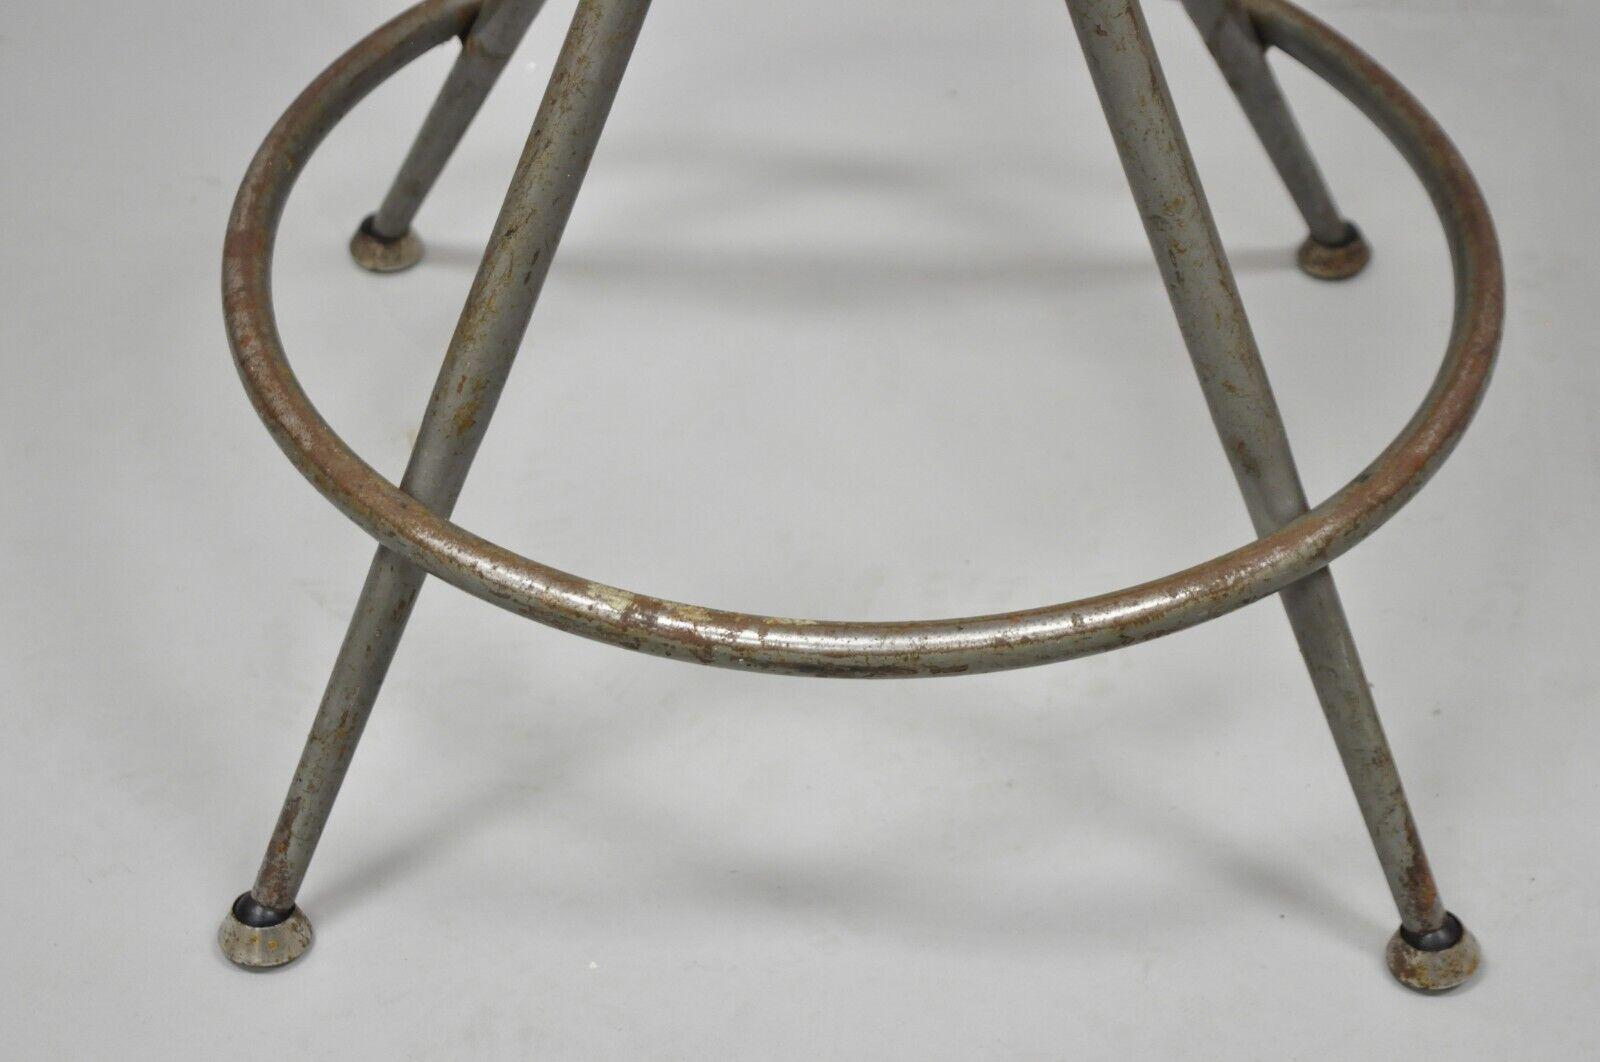 Vintage Industrial Gray Steel Metal Adjustable Drafting Stool Work Chair 1